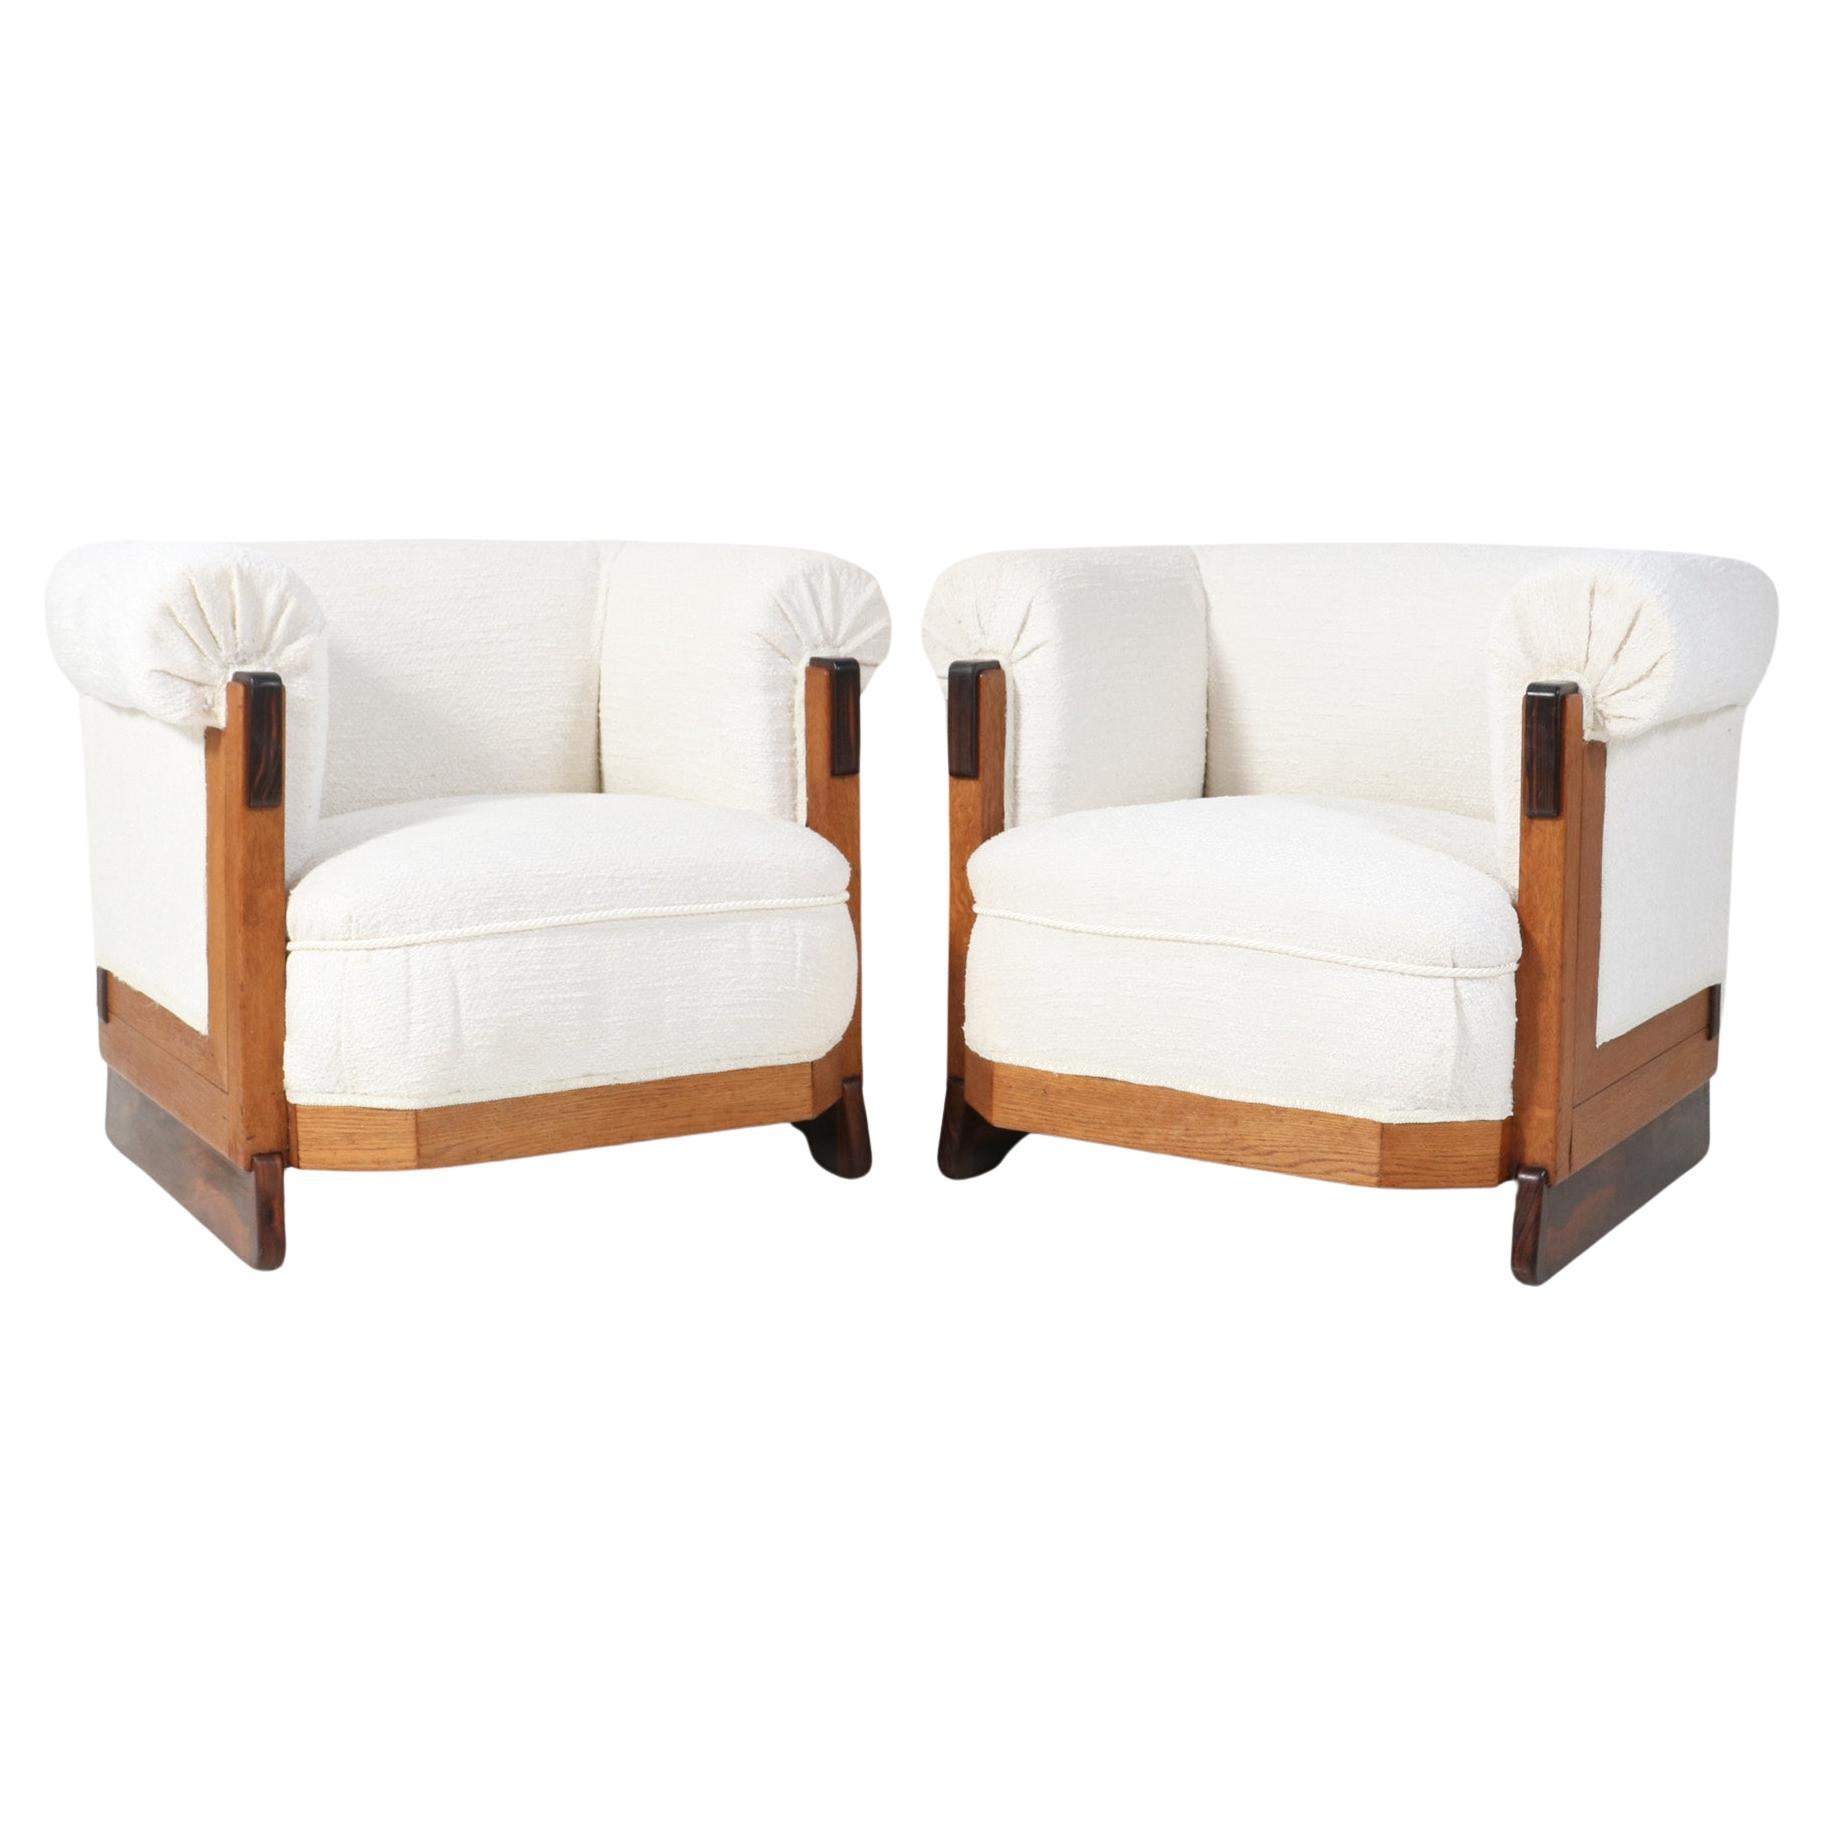 Two Art Deco Modernist Oak Lounge Chairs in Bouclé by Anton Lucas Leiden, 1920s